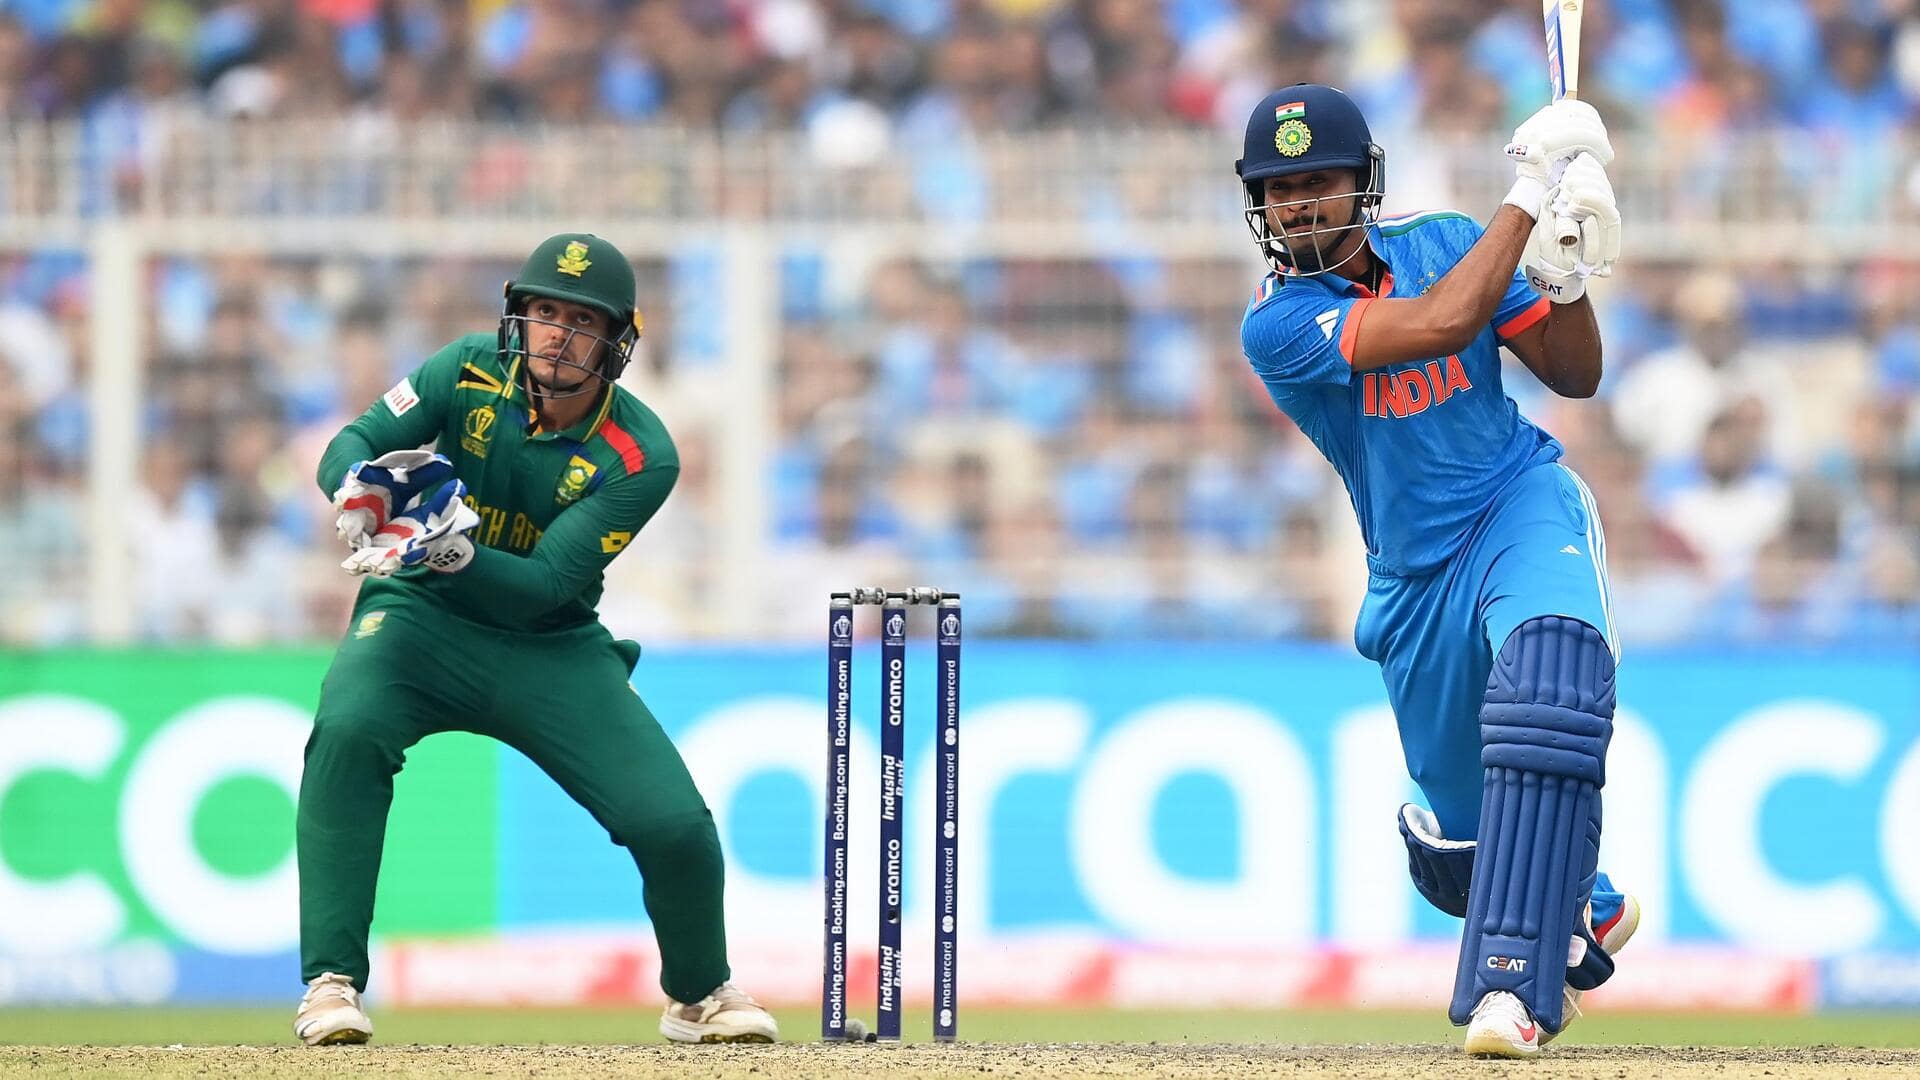 श्रेयस अय्यर विश्व कप के एक संस्करण में नंबर-4 पर सर्वाधिक रन बनाने वाले भारतीय बने